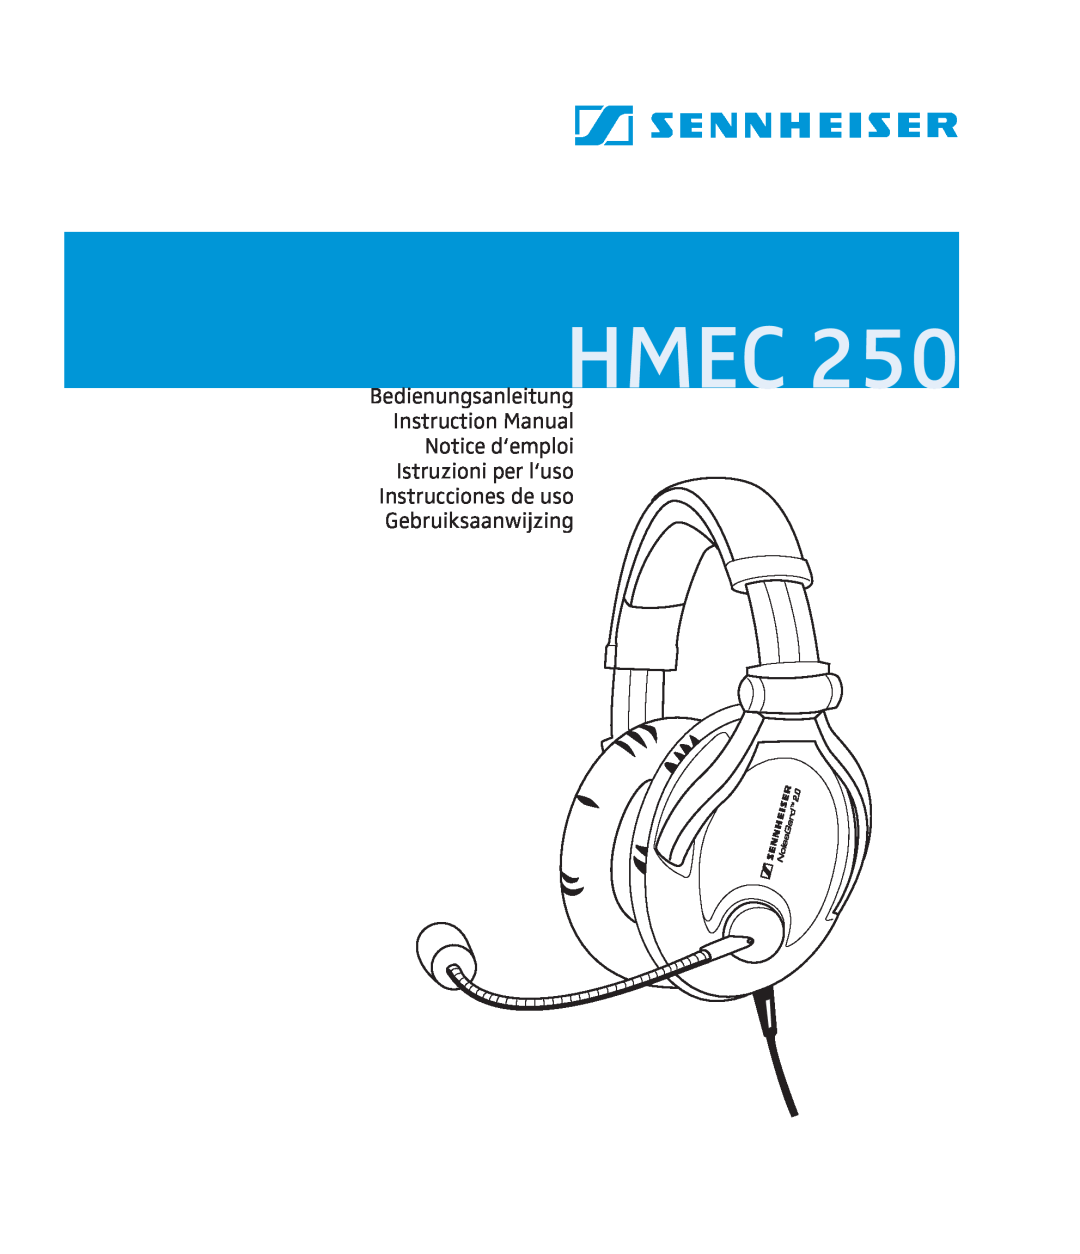 Sennheiser 250 instruction manual Hmec, Notice d‘emploi Istruzioni per l‘uso, Instrucciones de uso Gebruiksaanwijzing 